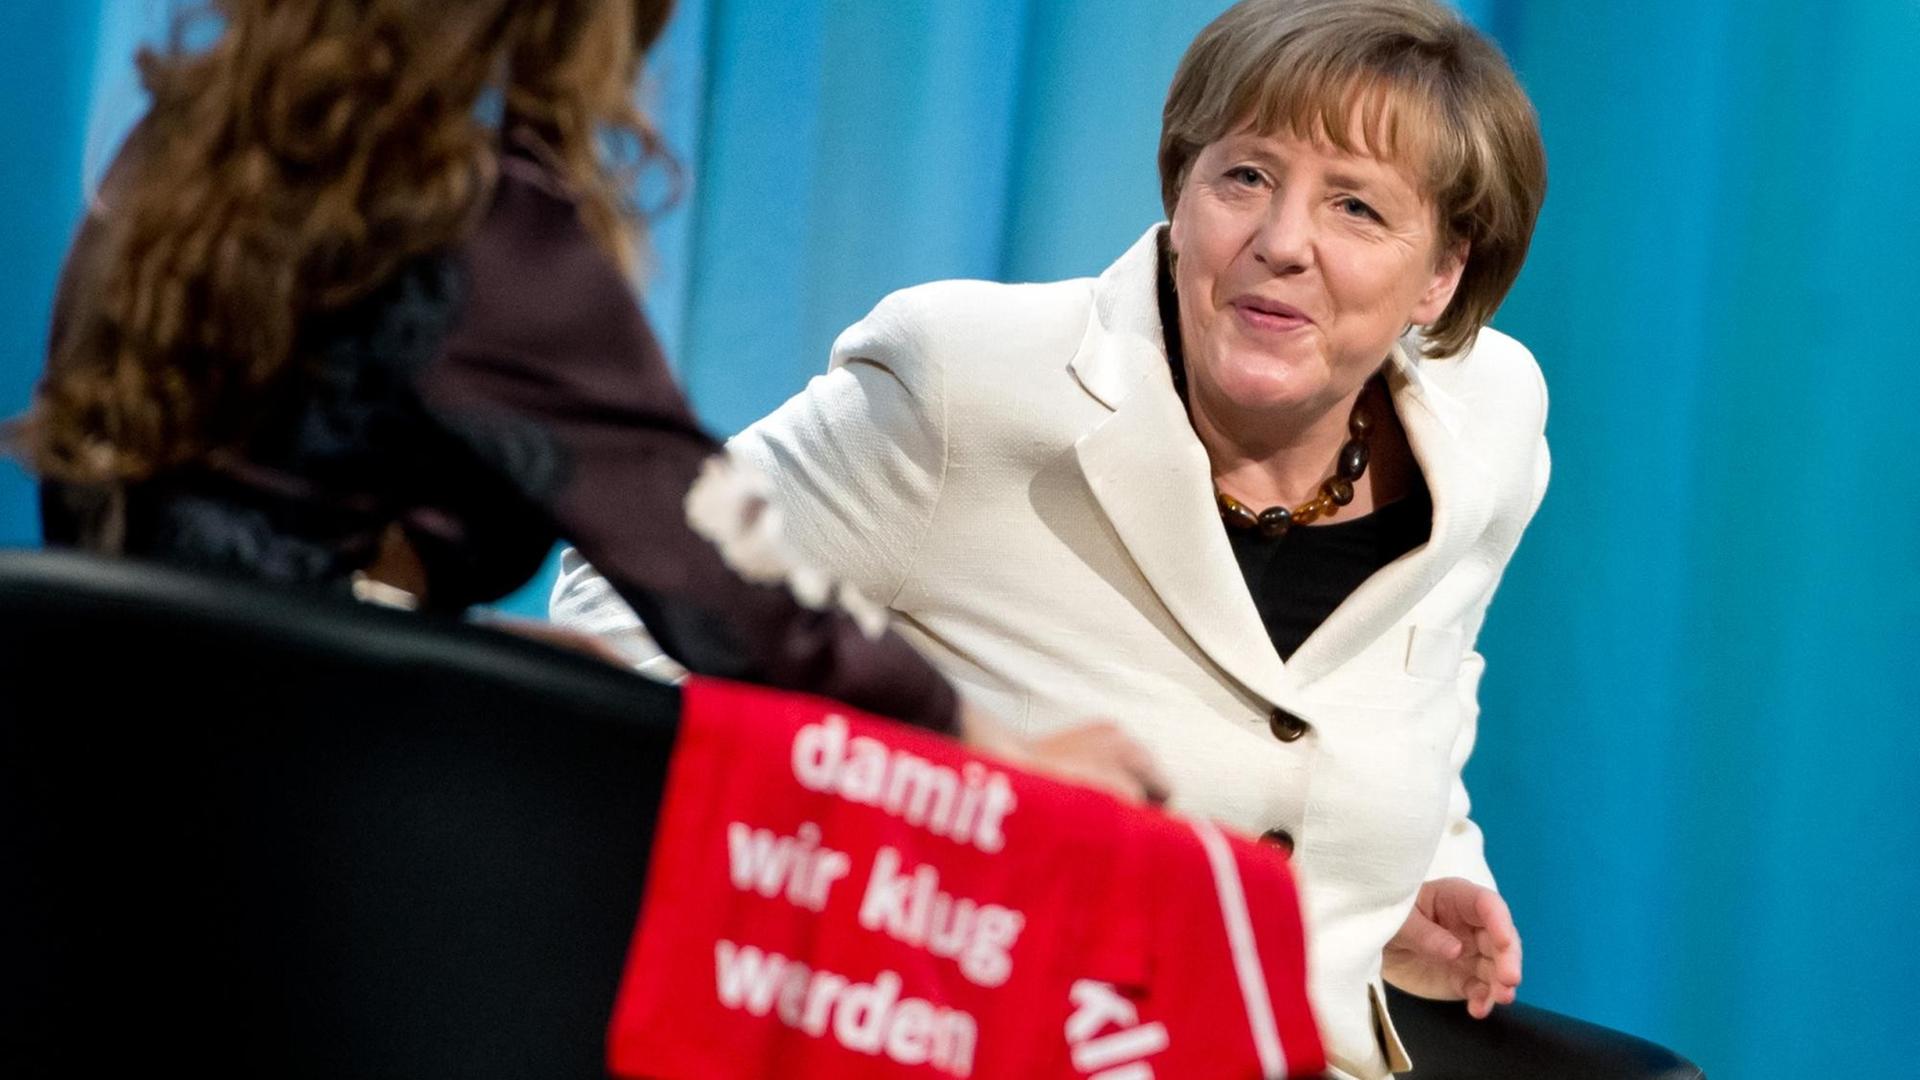 Angela Merkel auf einem Podium im Gespräch.